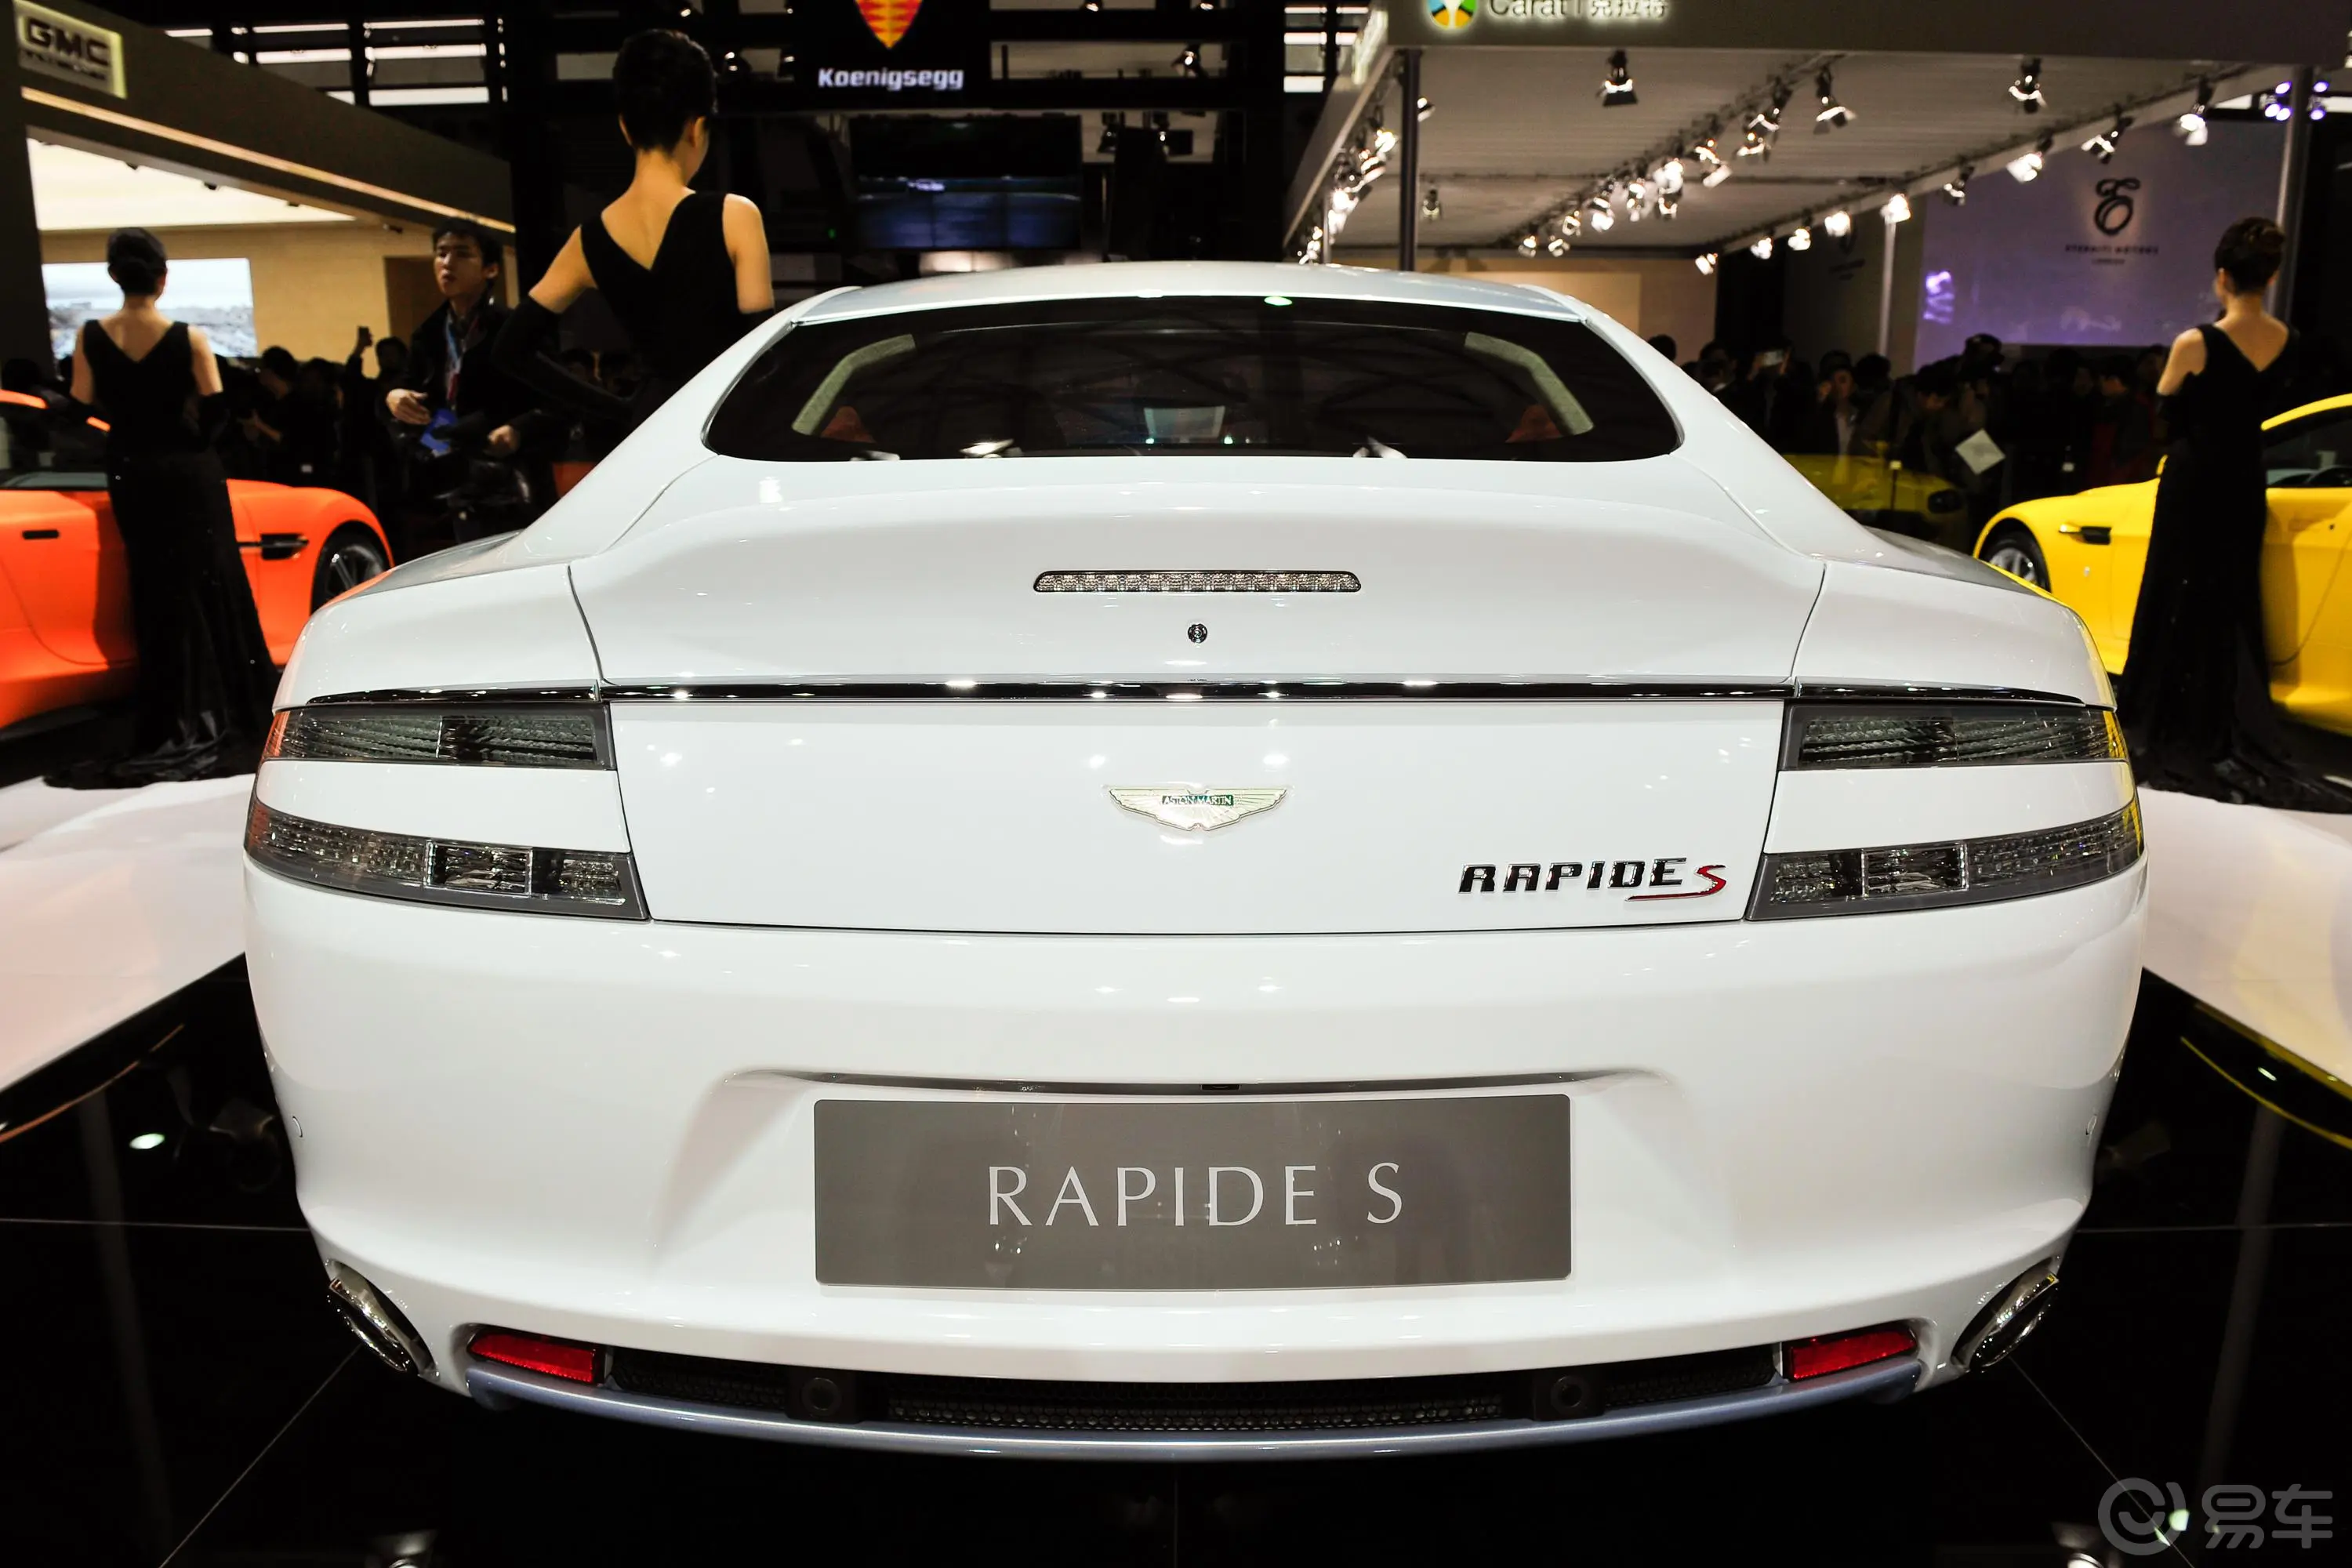 RapideS 6.0L 正侧车头向右水平